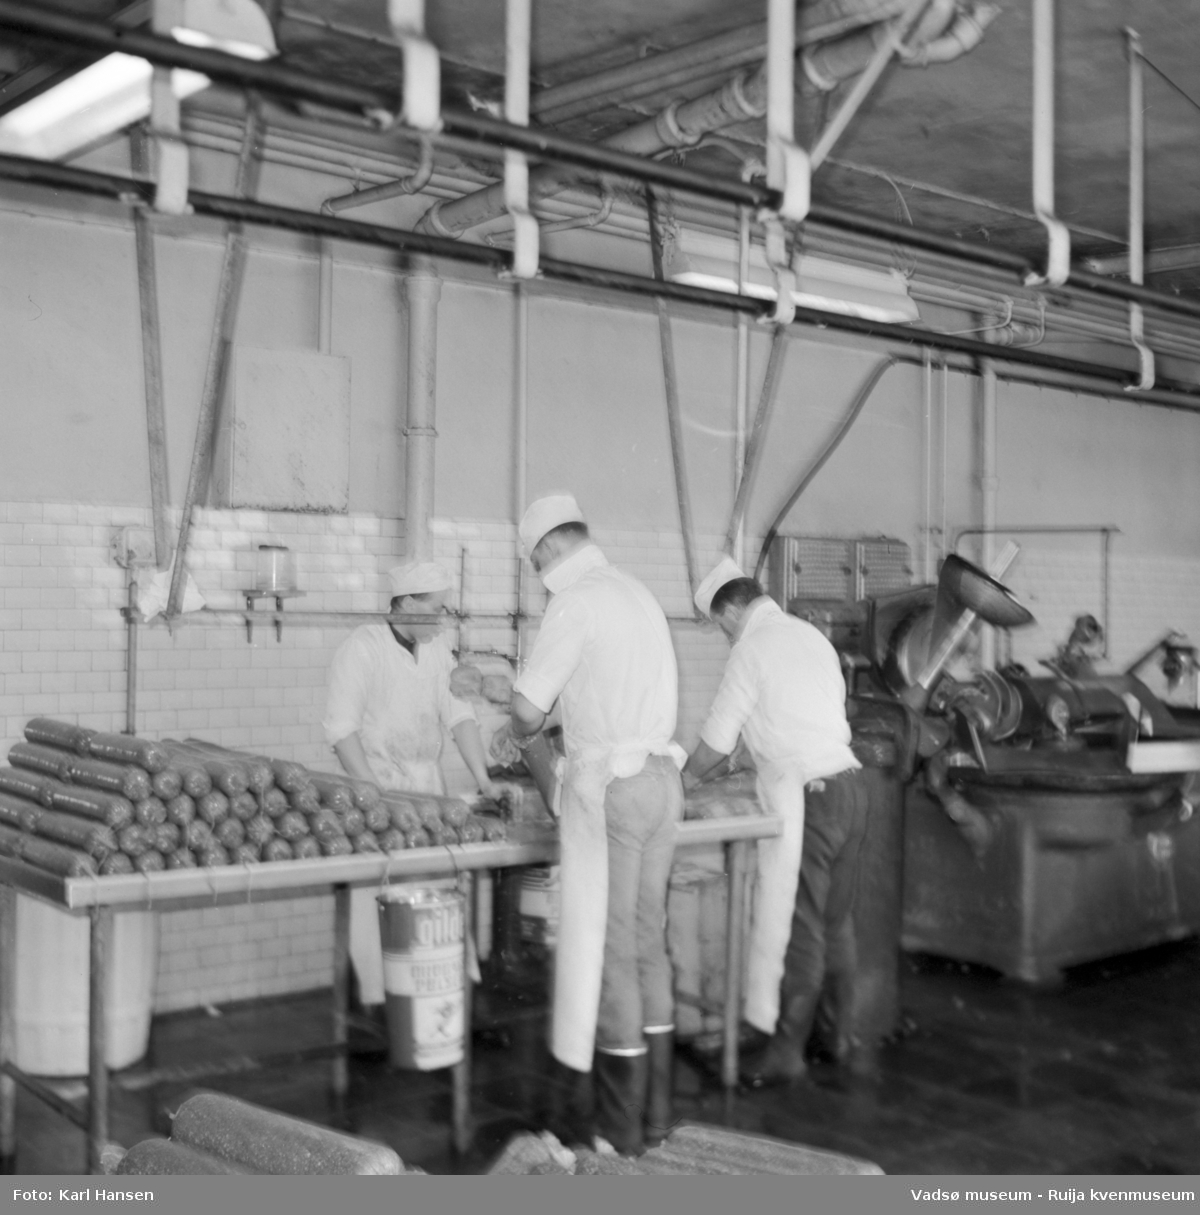 Nord-Norges salgslag Vadsø, 1964. Tre menn arbeider med spekepølseproduksjon i produksjonshallen. Fra venstre; Valter Kestilæ, Roy Aronsen og Ronny Johnsen.